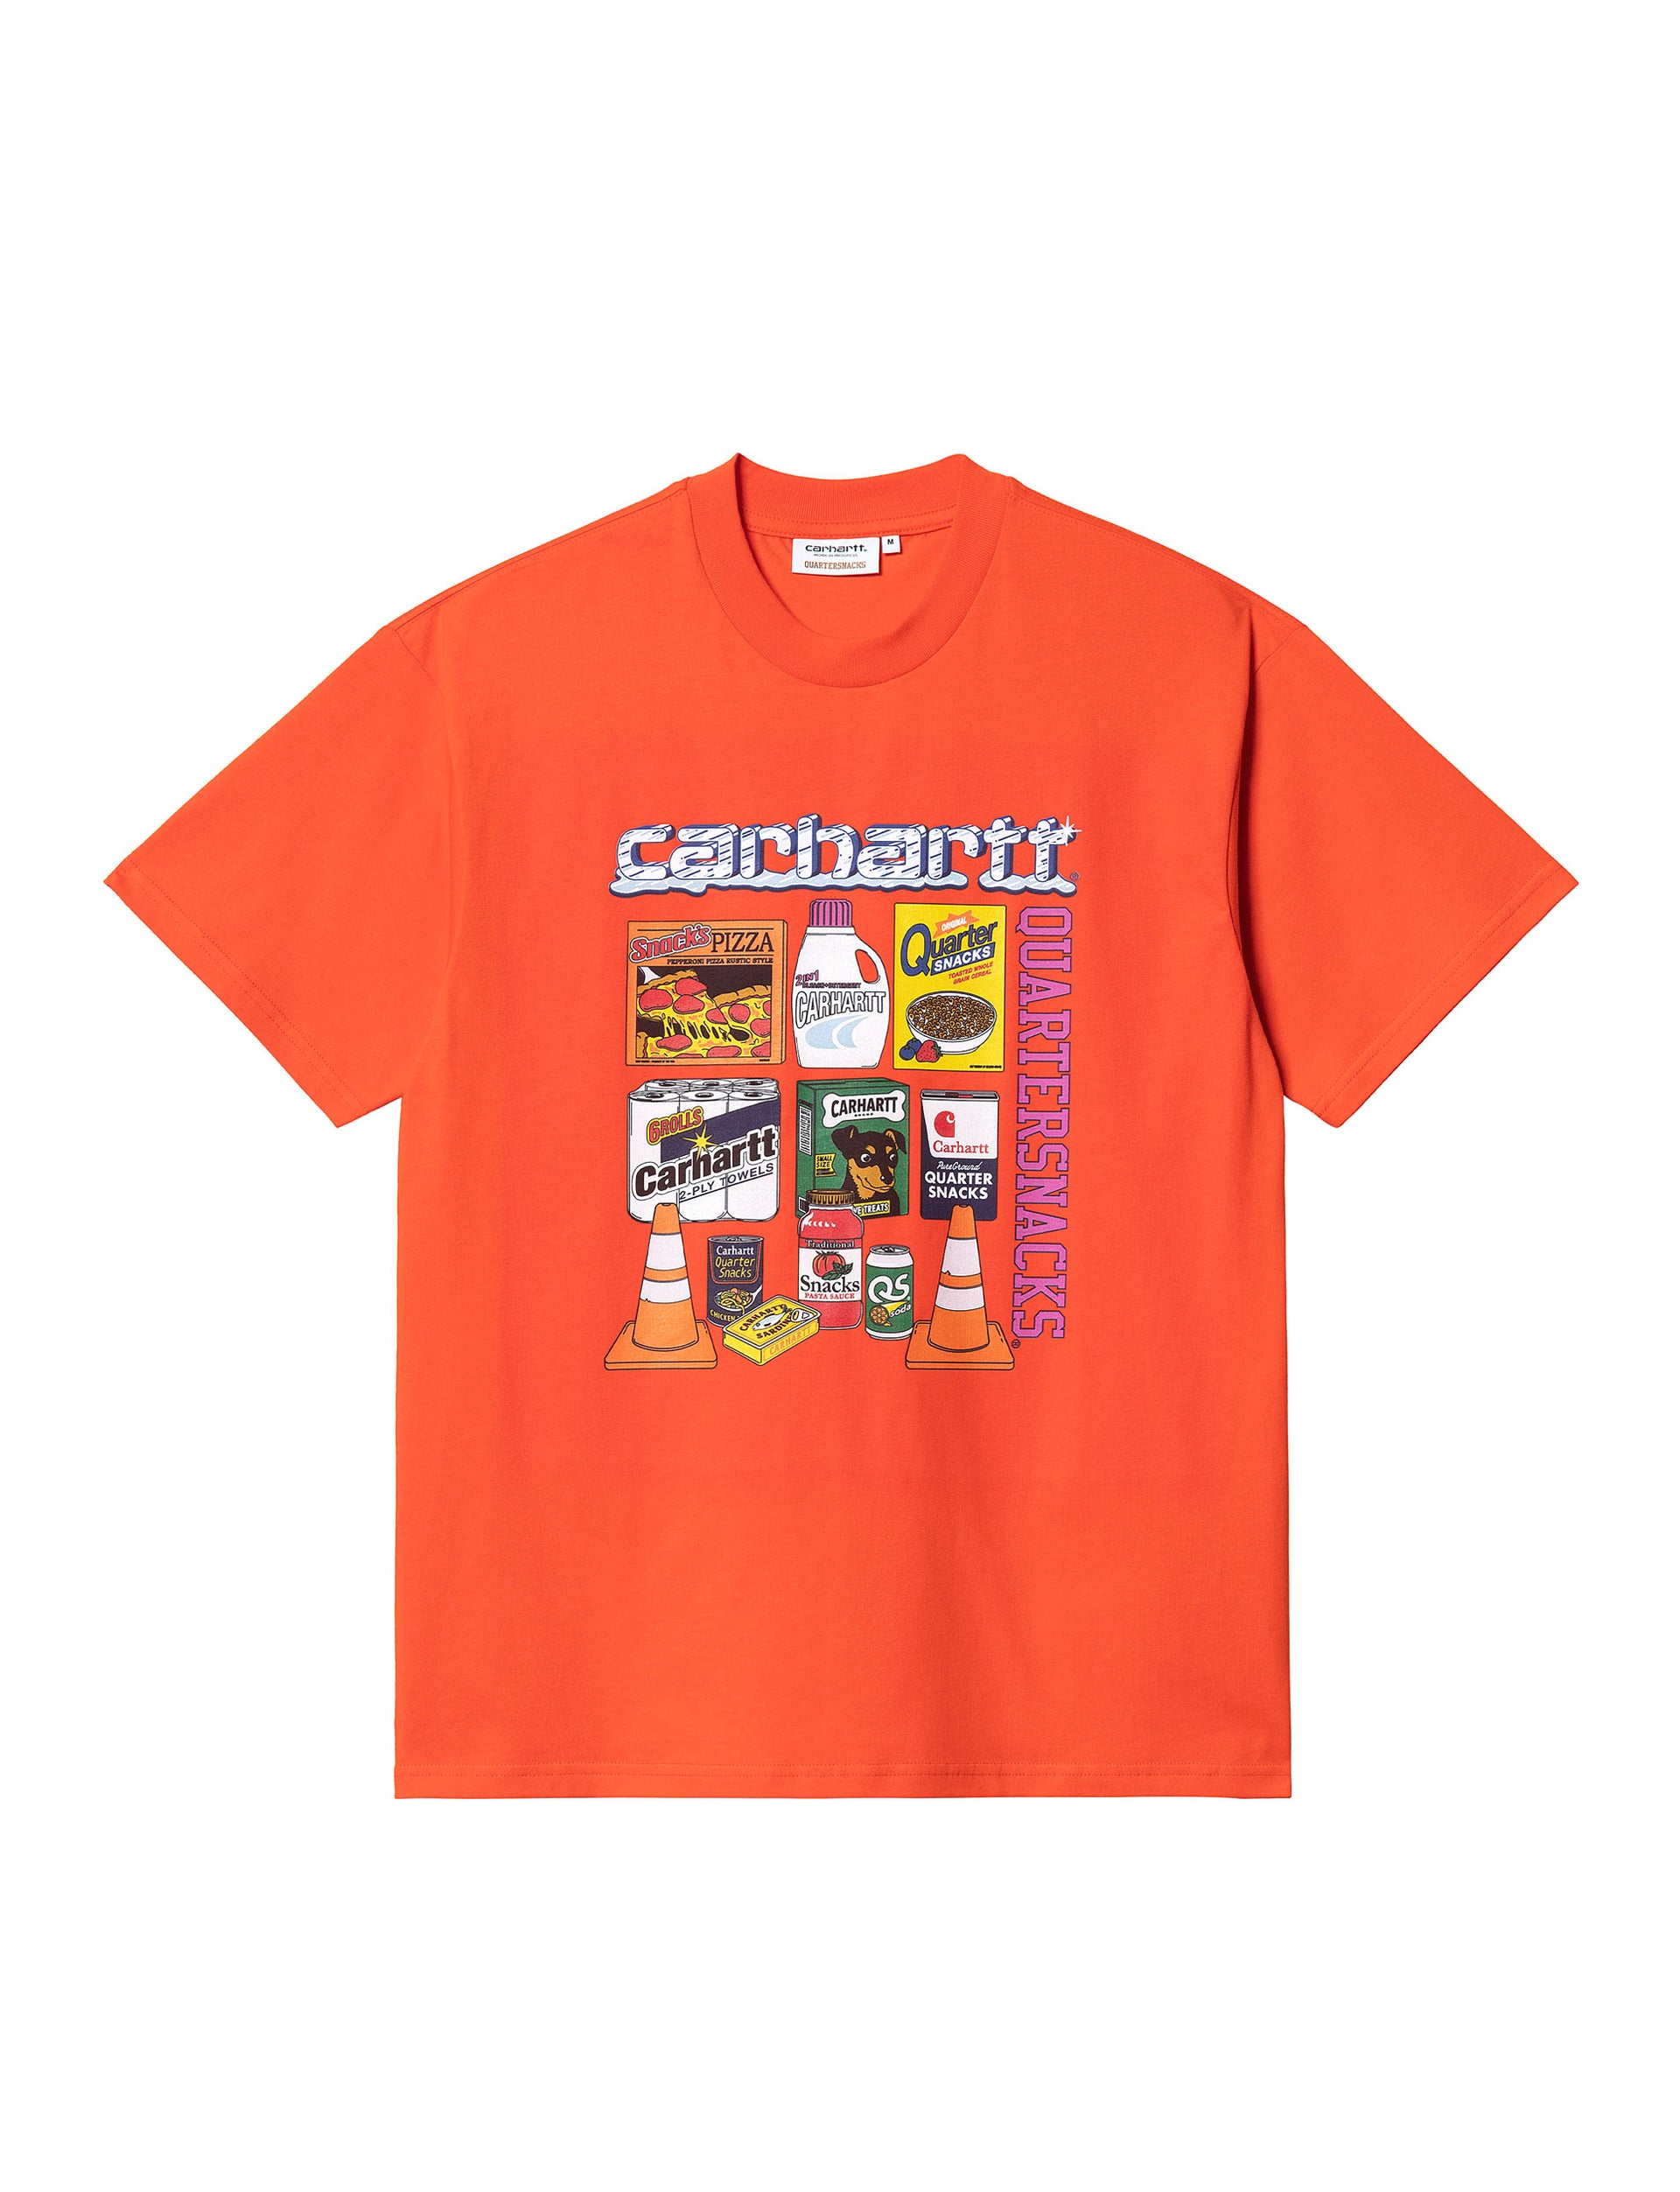 CARHARTT WIP Quartersnacks S/S Graphic T-Shirt ORANGE